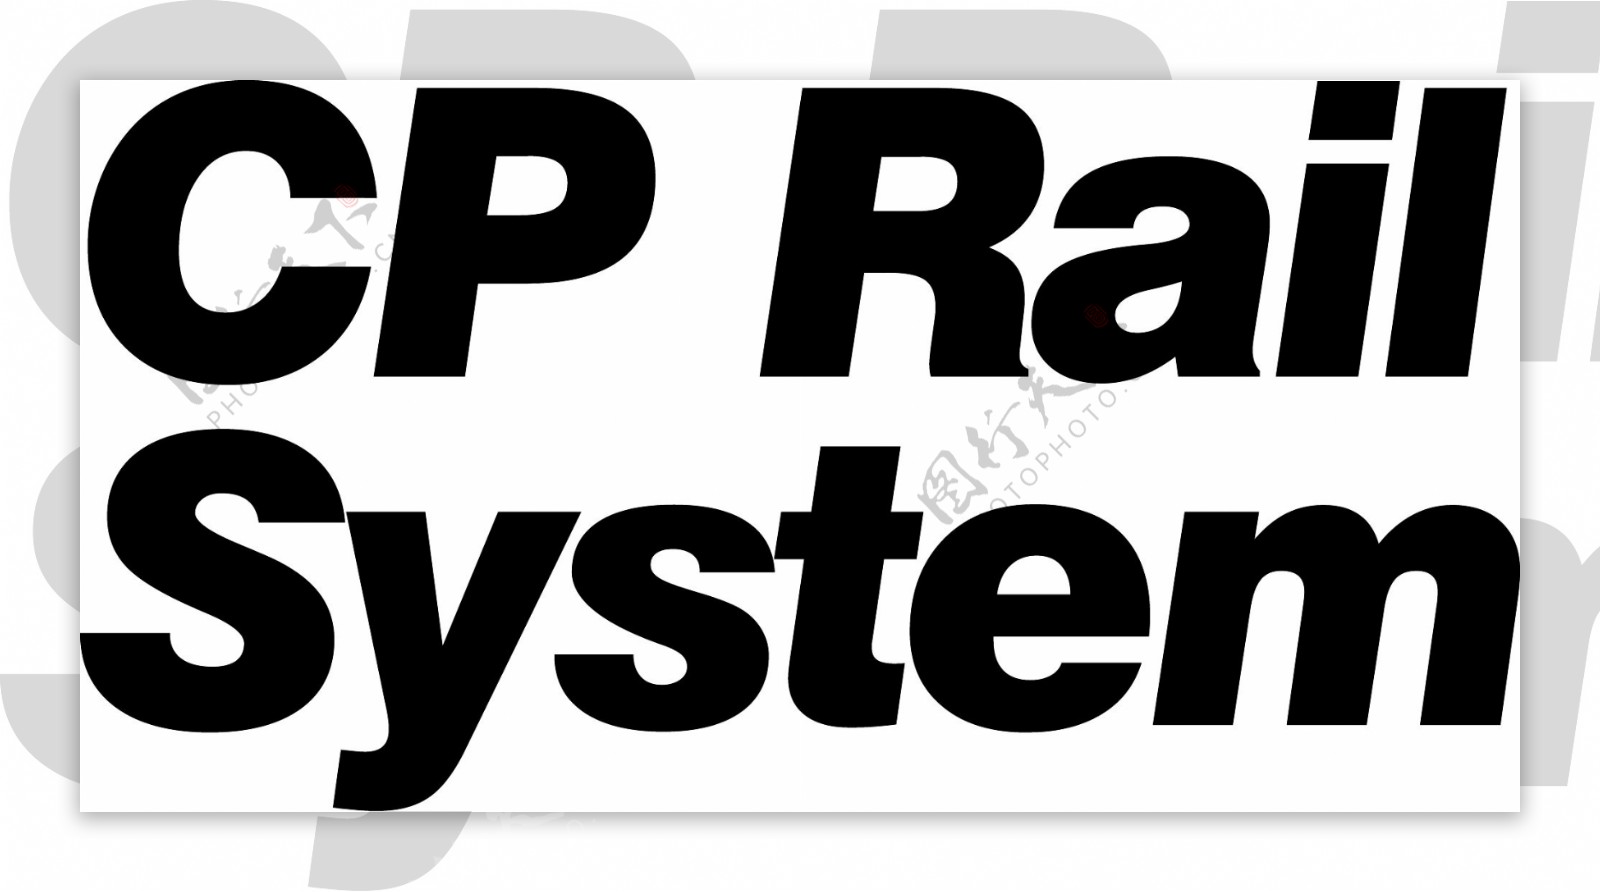 CP铁路系统标识